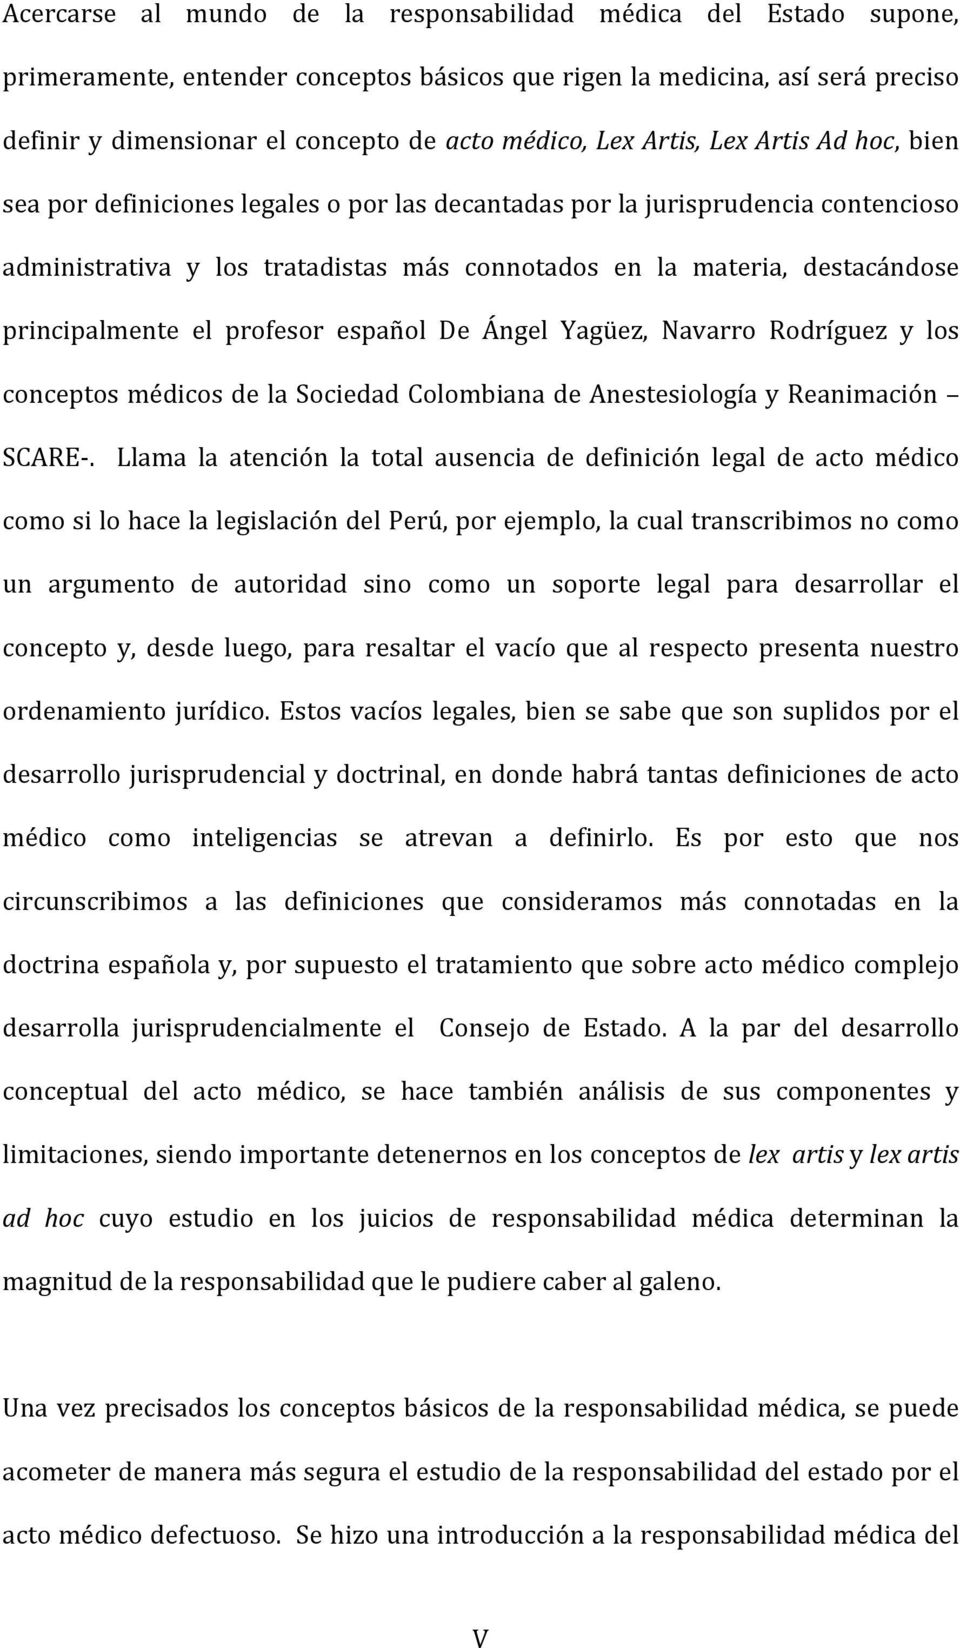 principalmente el profesor español De Ángel Yagüez, Navarro Rodríguez y los conceptos médicos de la Sociedad Colombiana de Anestesiología y Reanimación SCARE-.